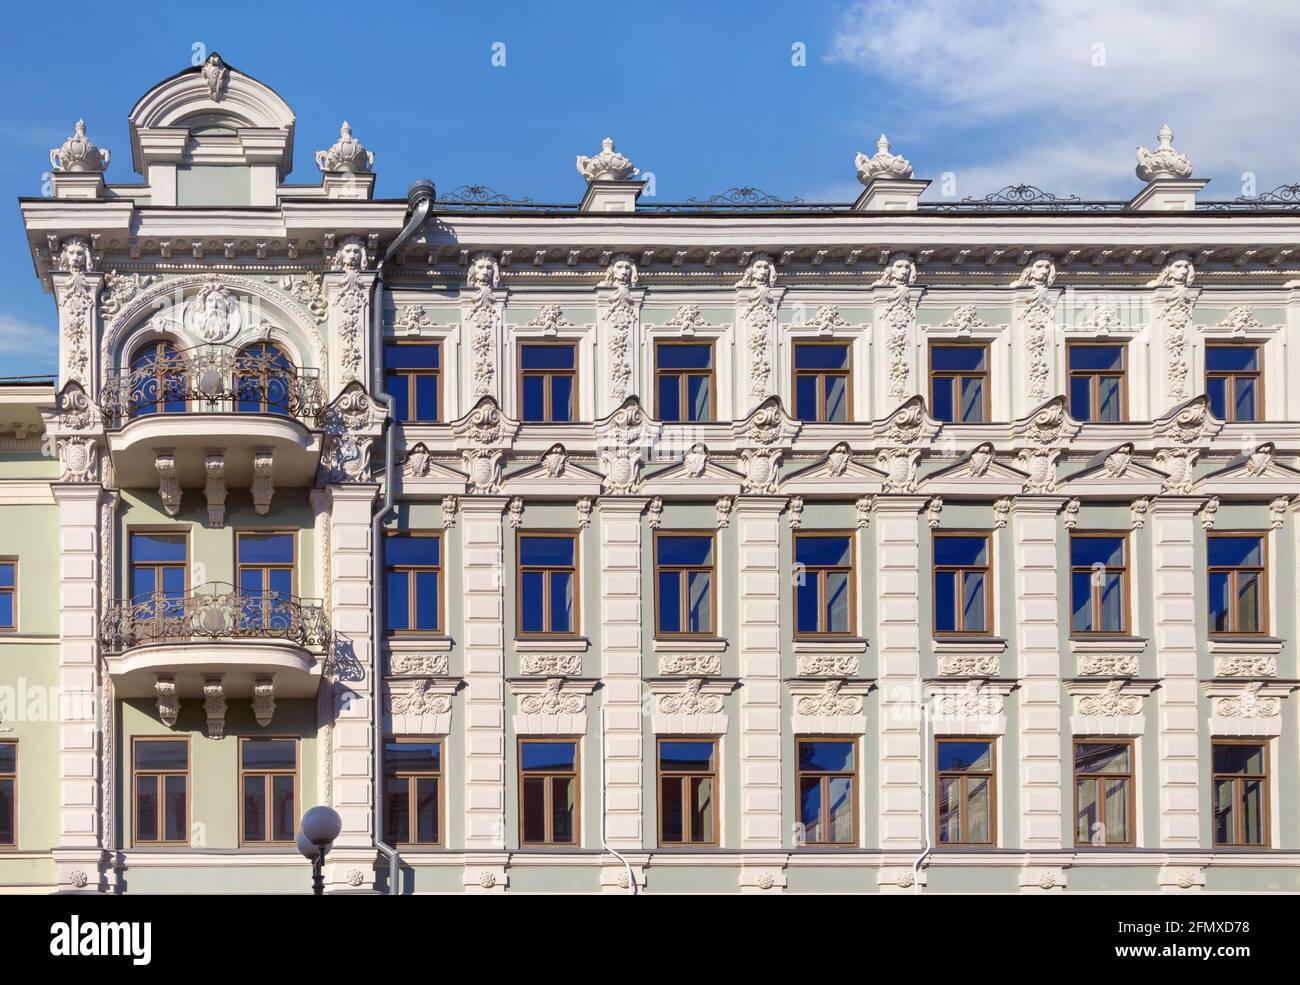 Fragment der Fassade eines Gebäudes mit Basrelief in Kasan. Russland Stockfoto